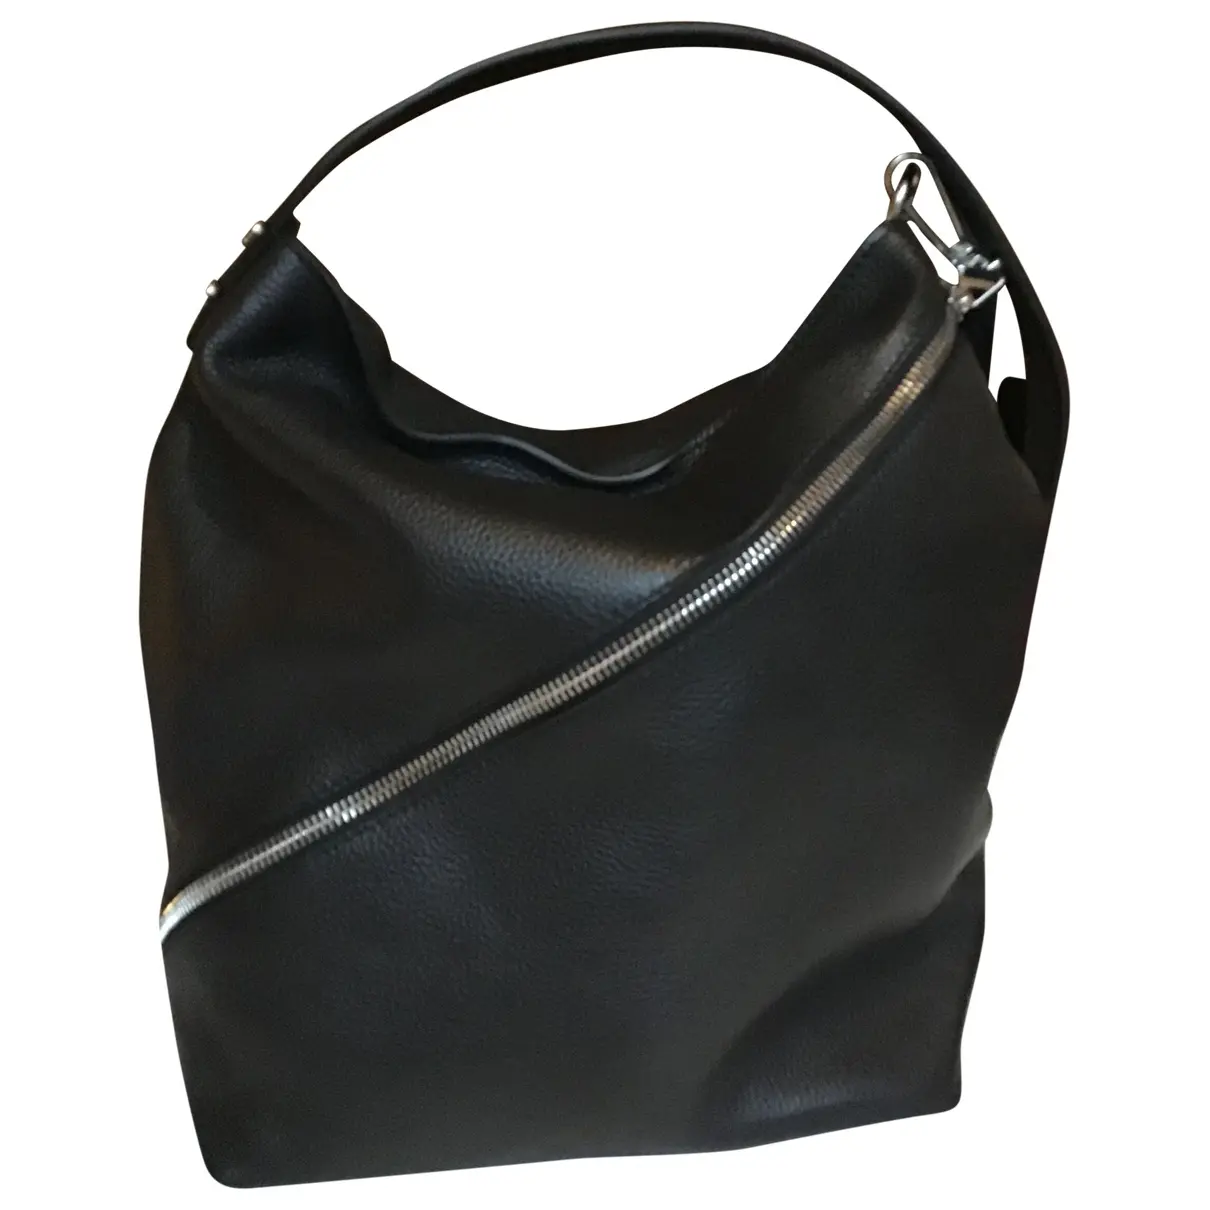 Zip Hobo leather handbag Proenza Schouler